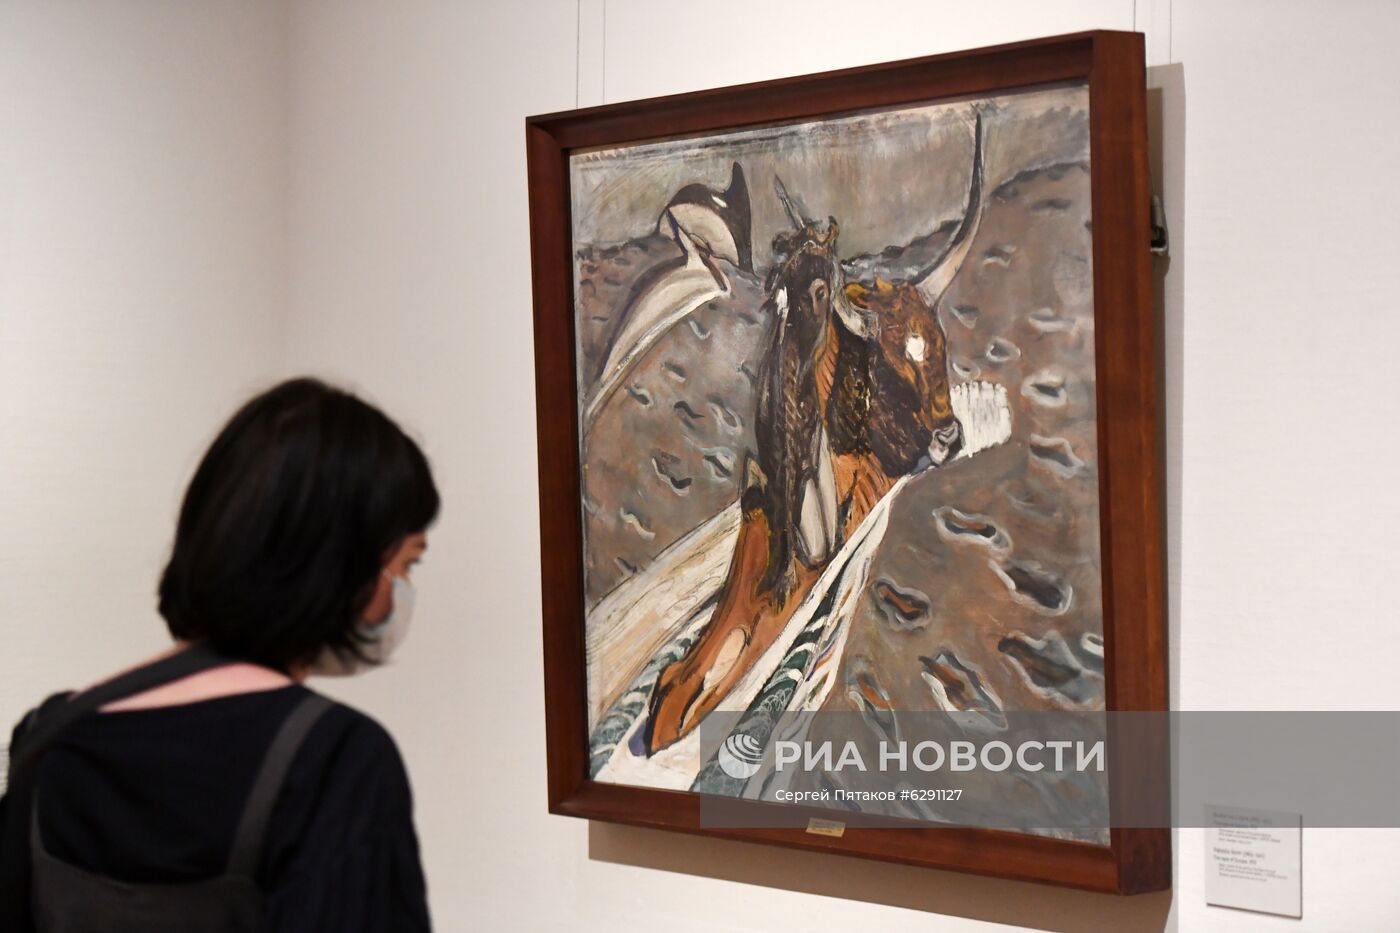 Открытие выставки "Предчувствуя ХХ век" в Третьяковской галерее